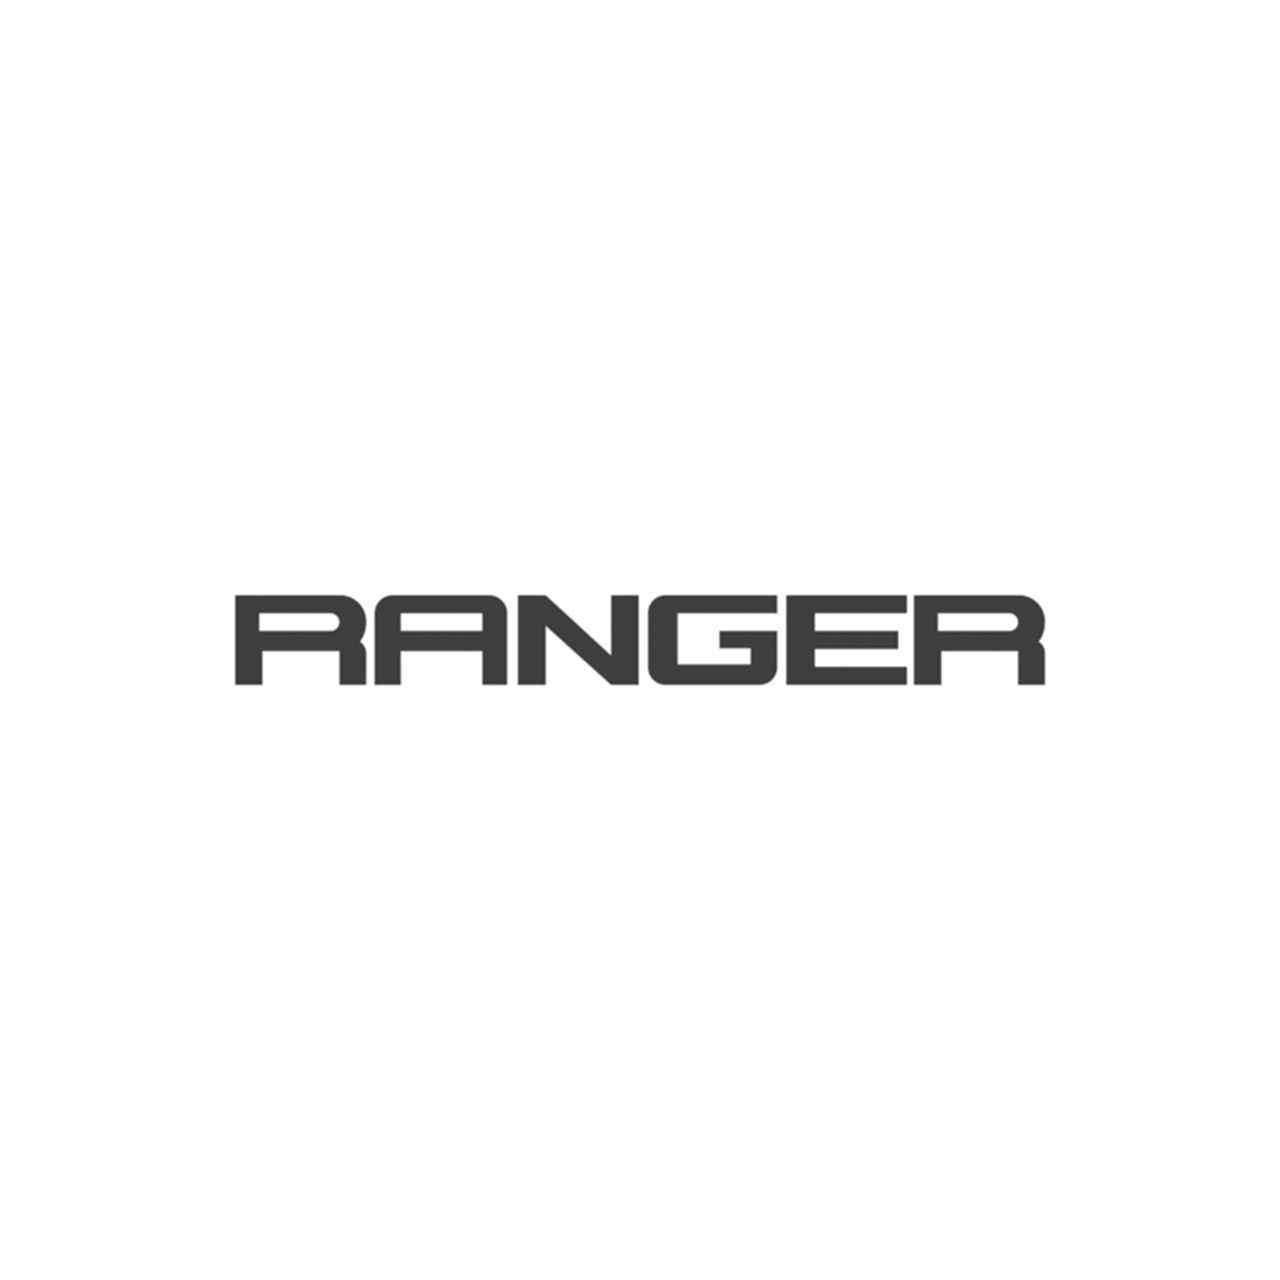 Ranger Logo - Ford Ranger Logo Vinyl Decal